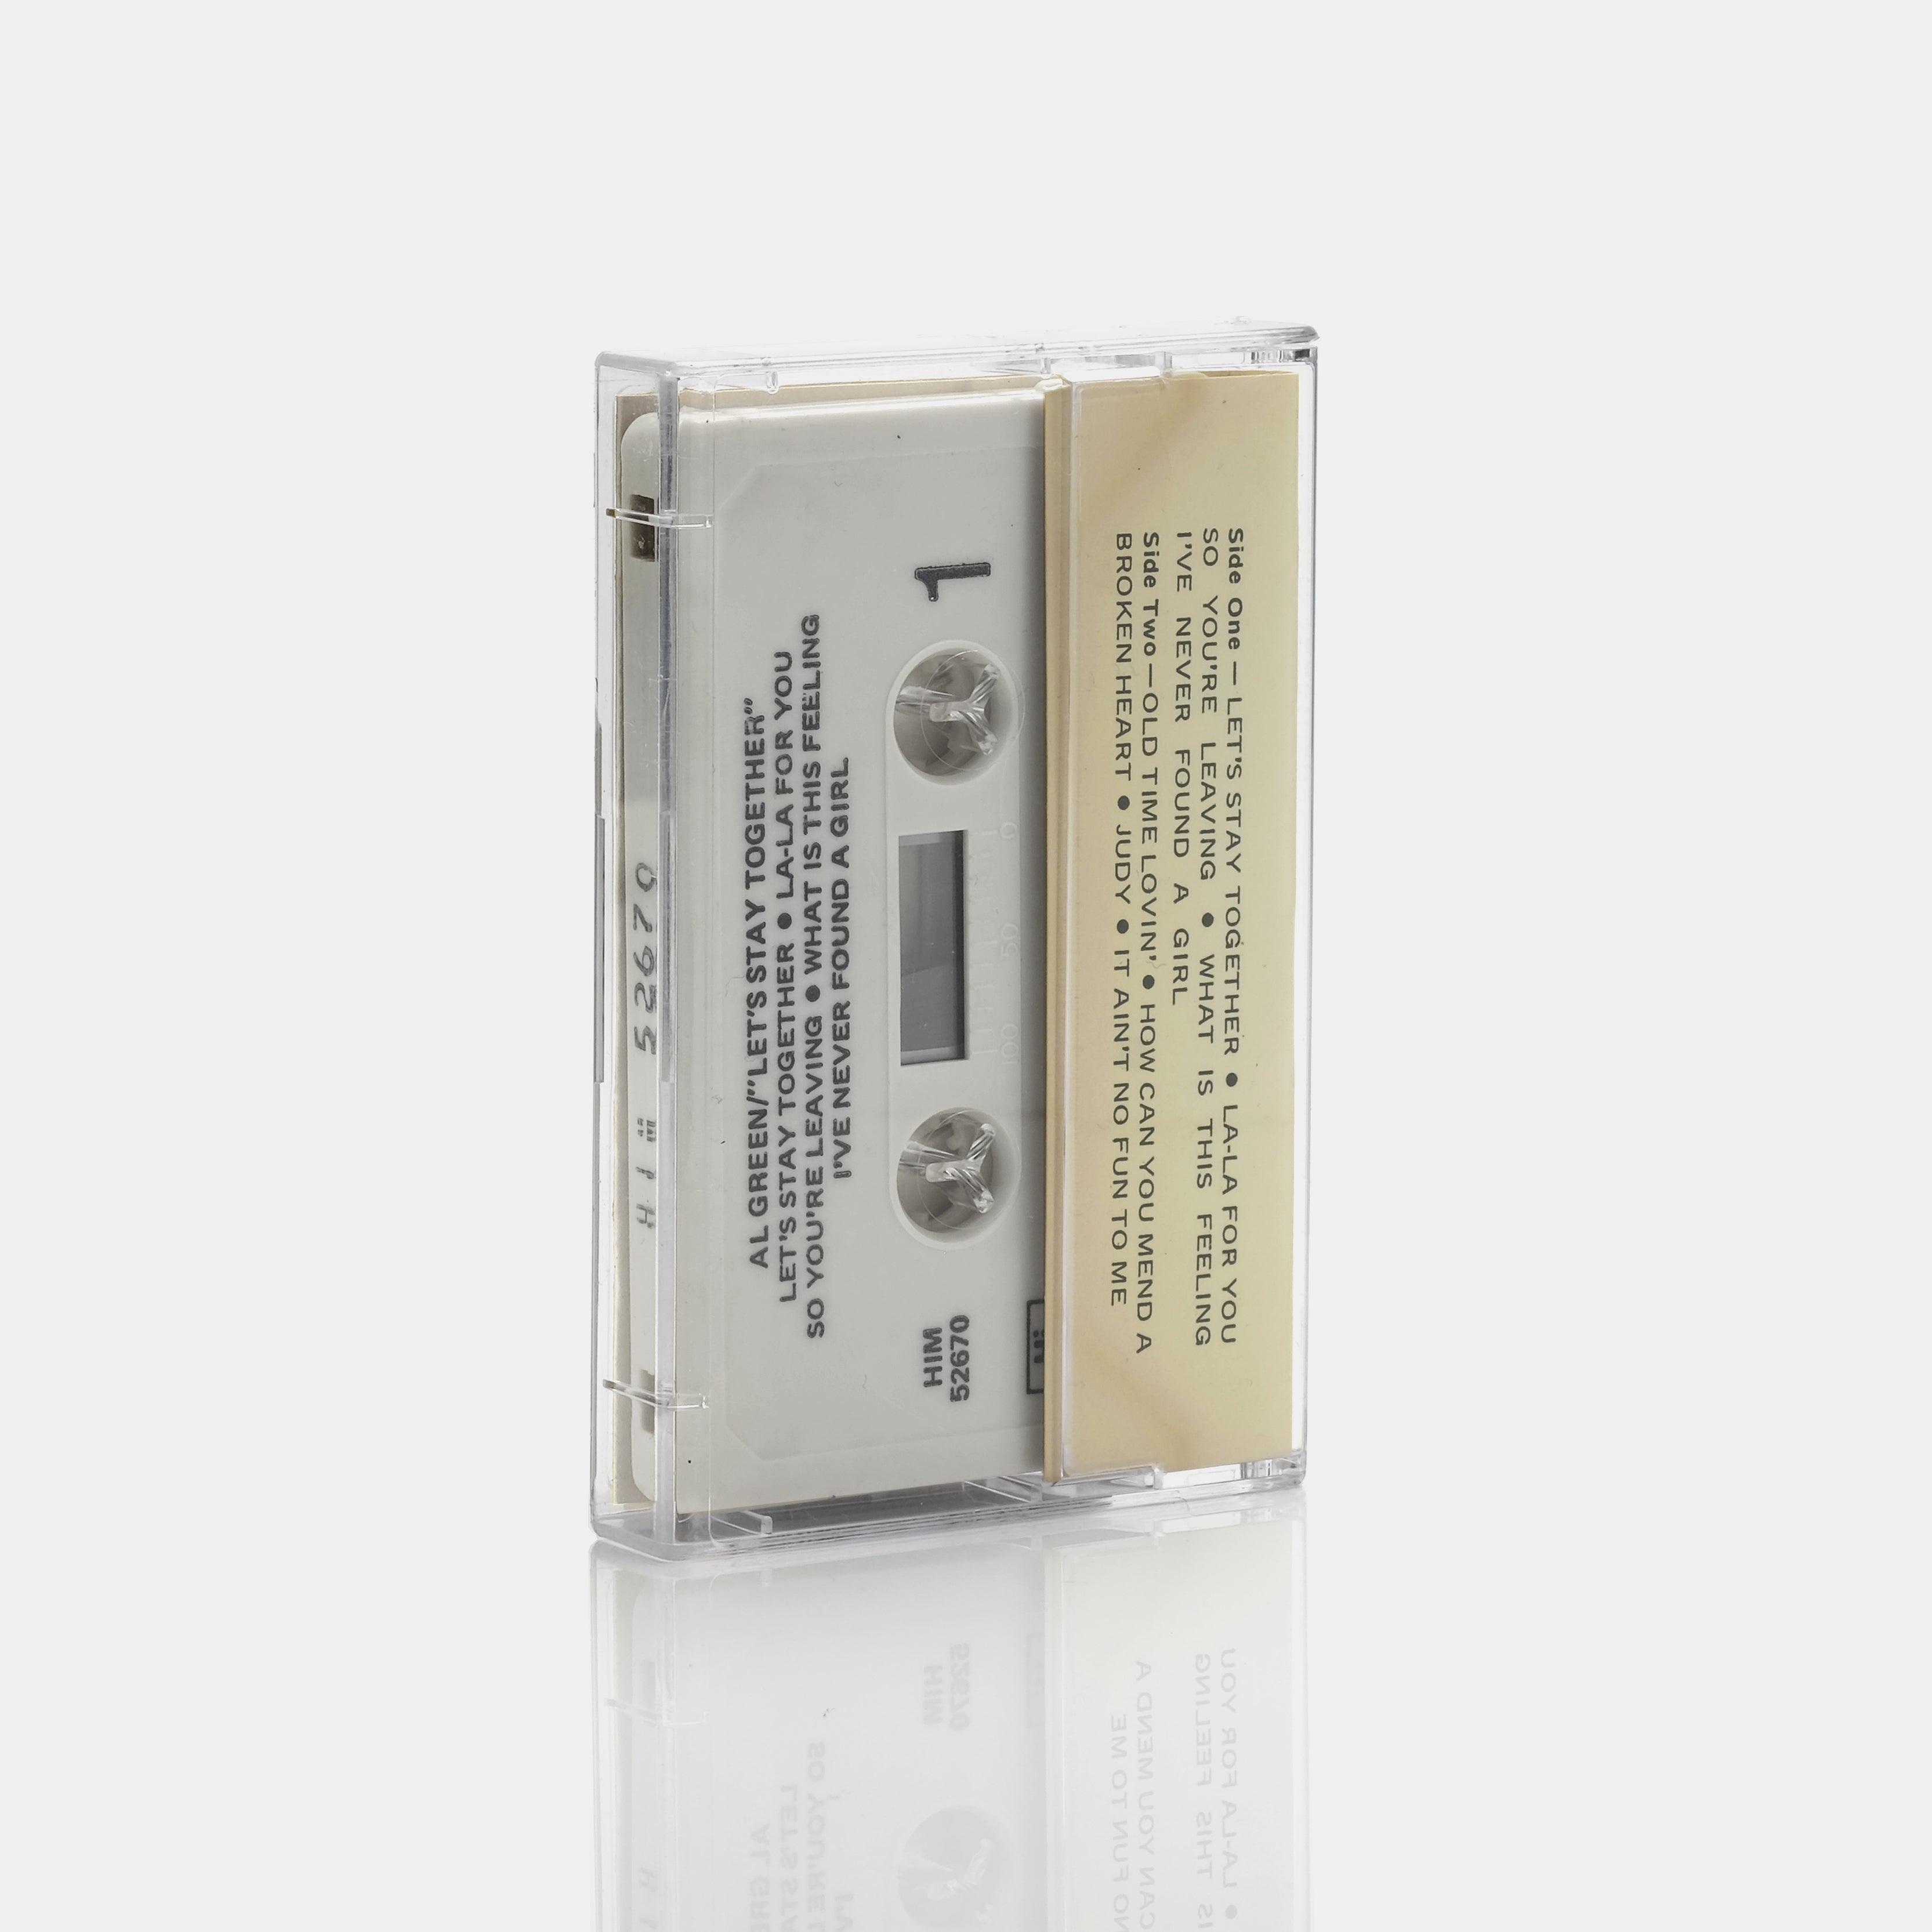 Al Green - Let's Stay Together Cassette Tape